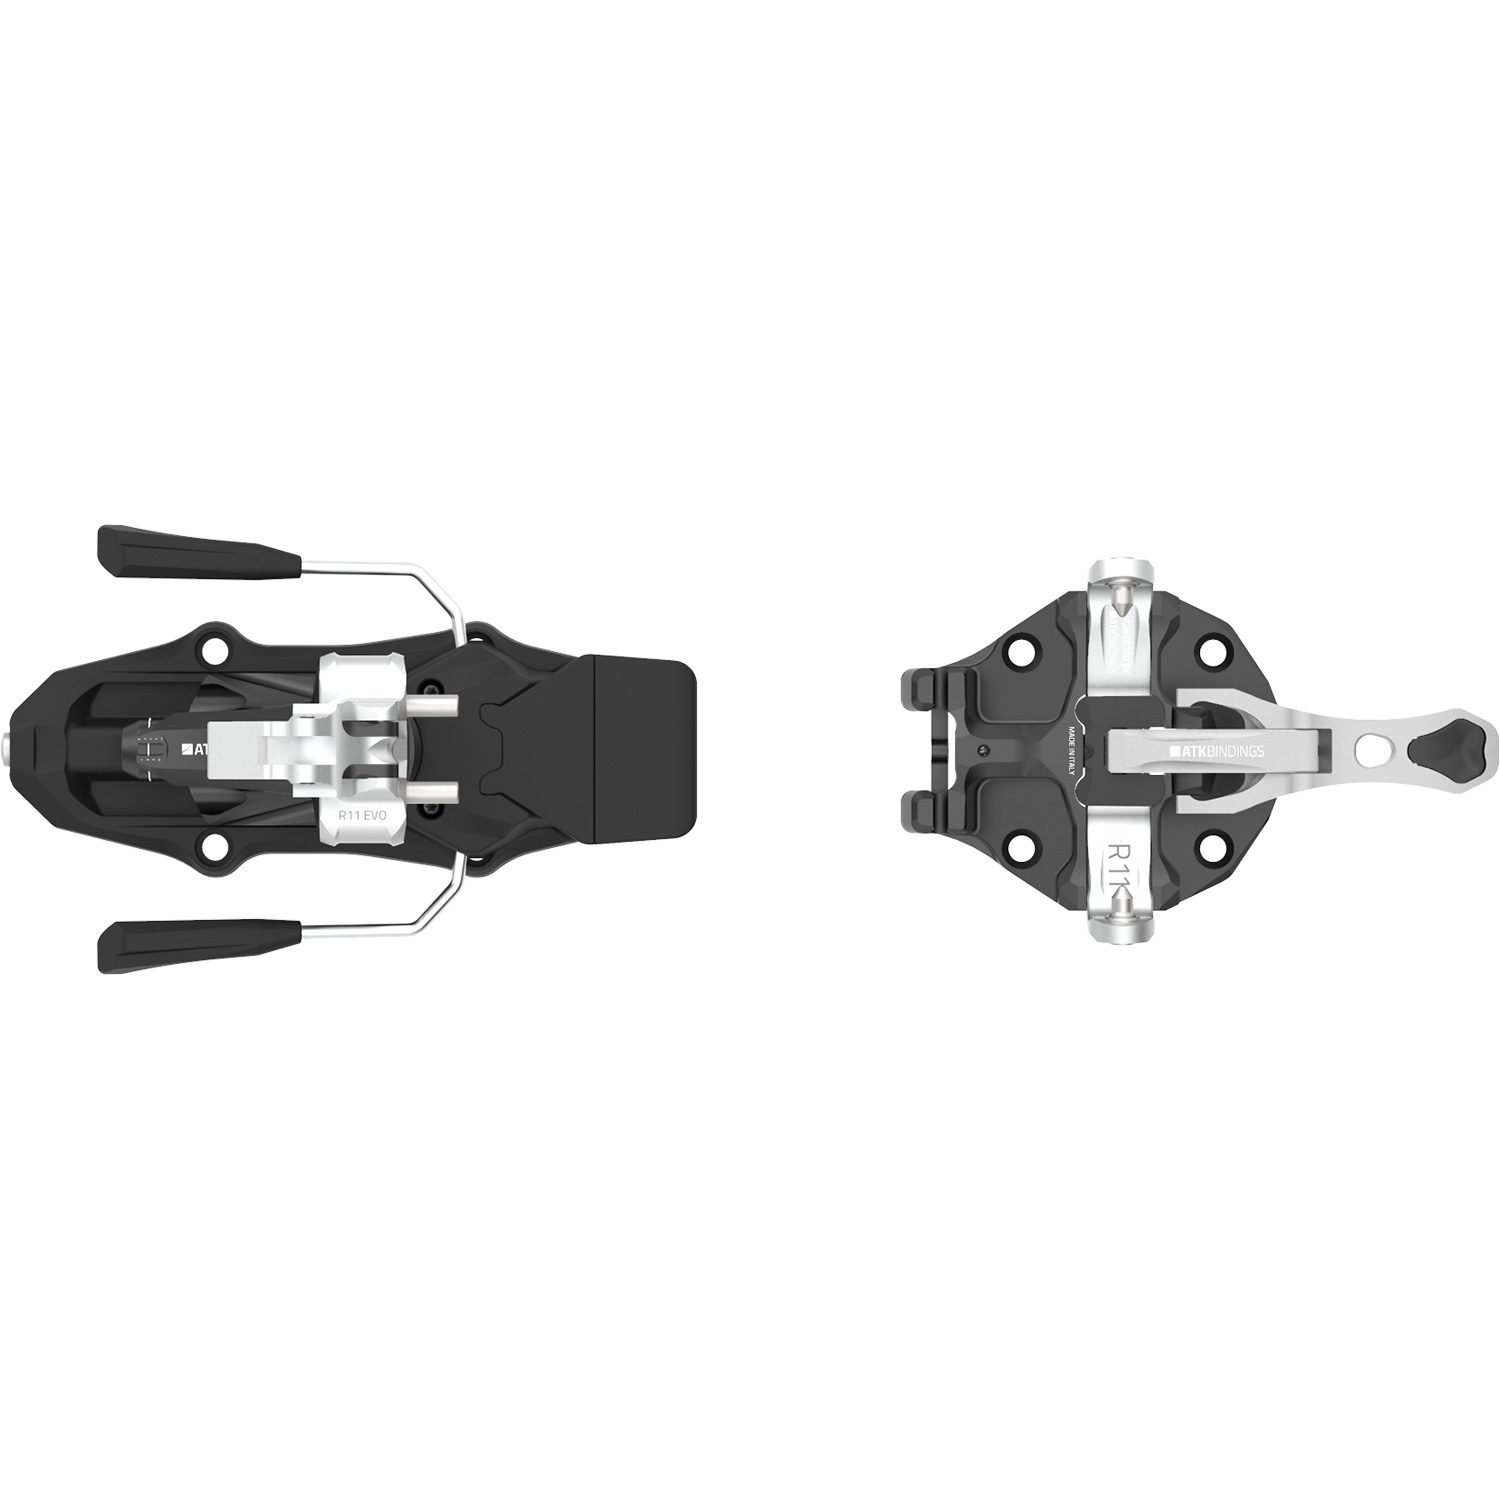 Raider 11 EVO Tourenbindung 102mm Stopper schwarz weiß